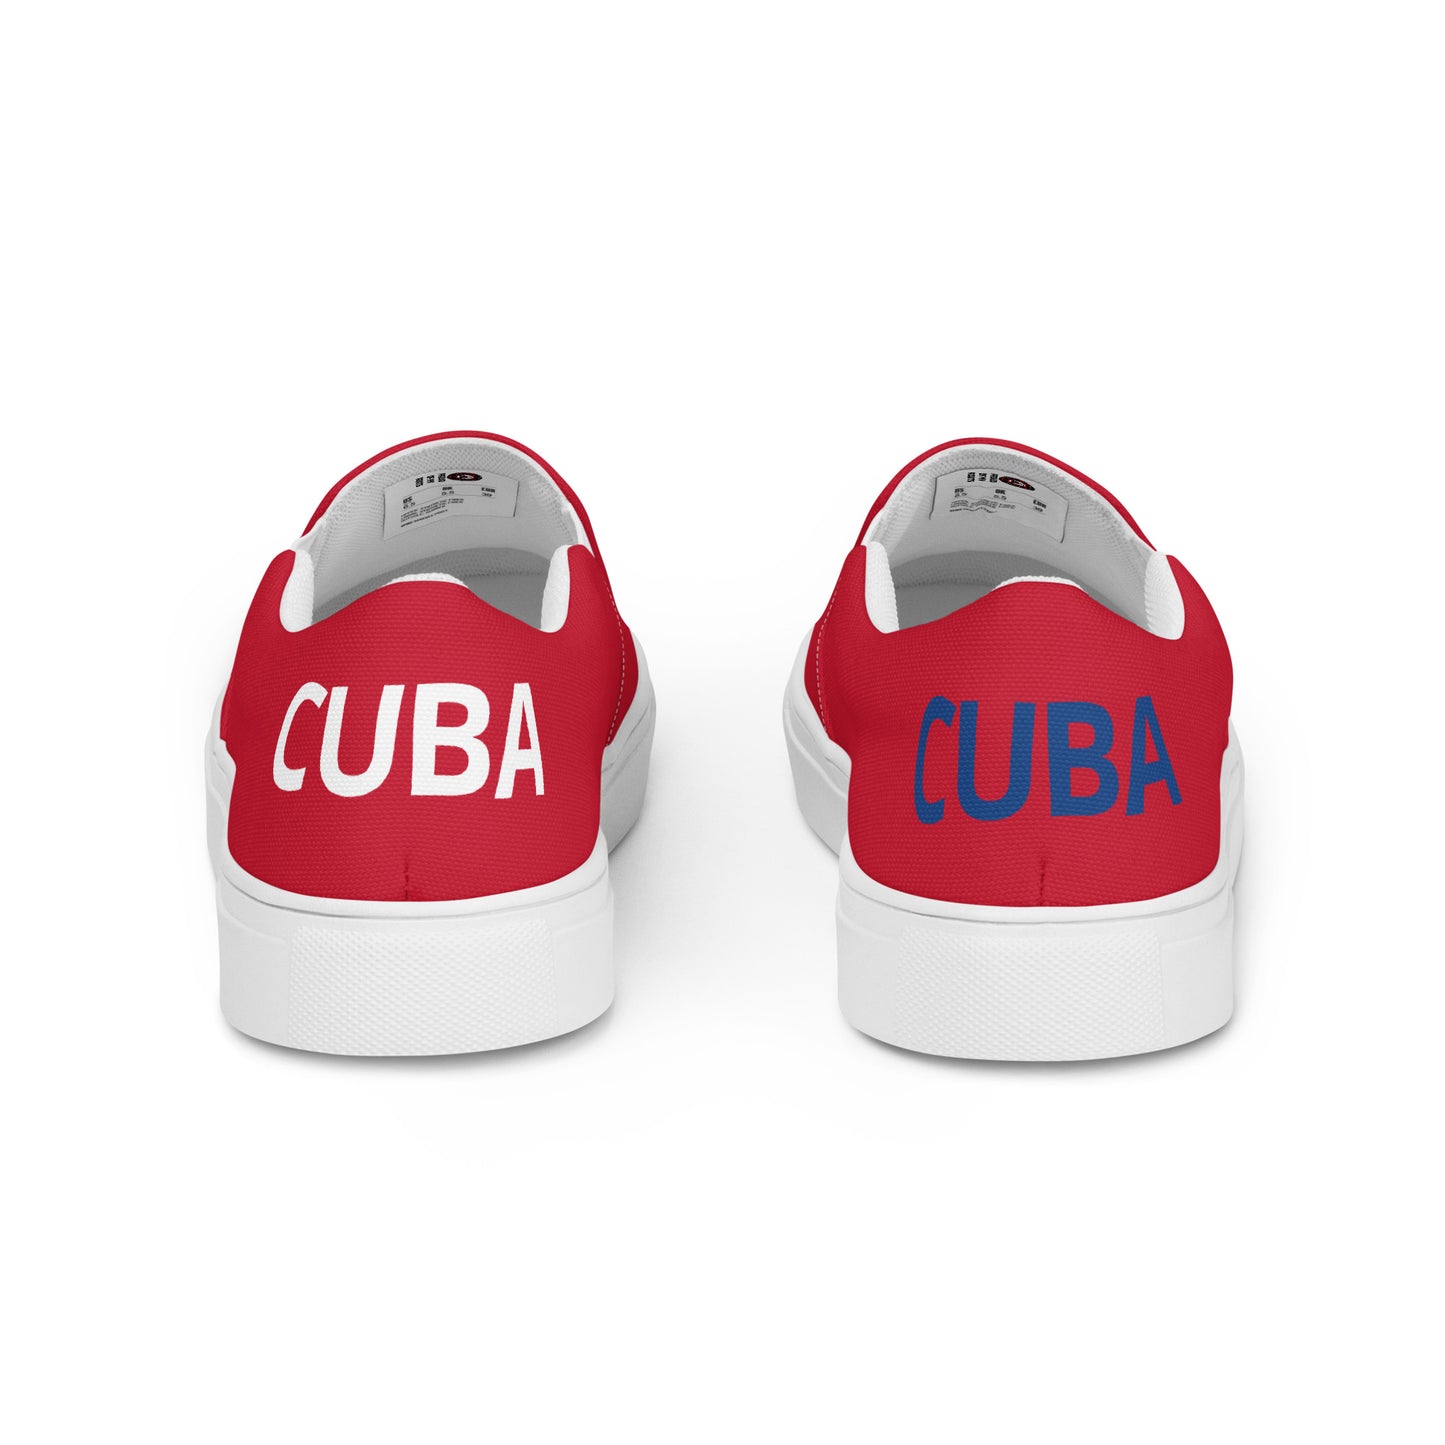 Cuba - Women - Red - Slip-on shoes